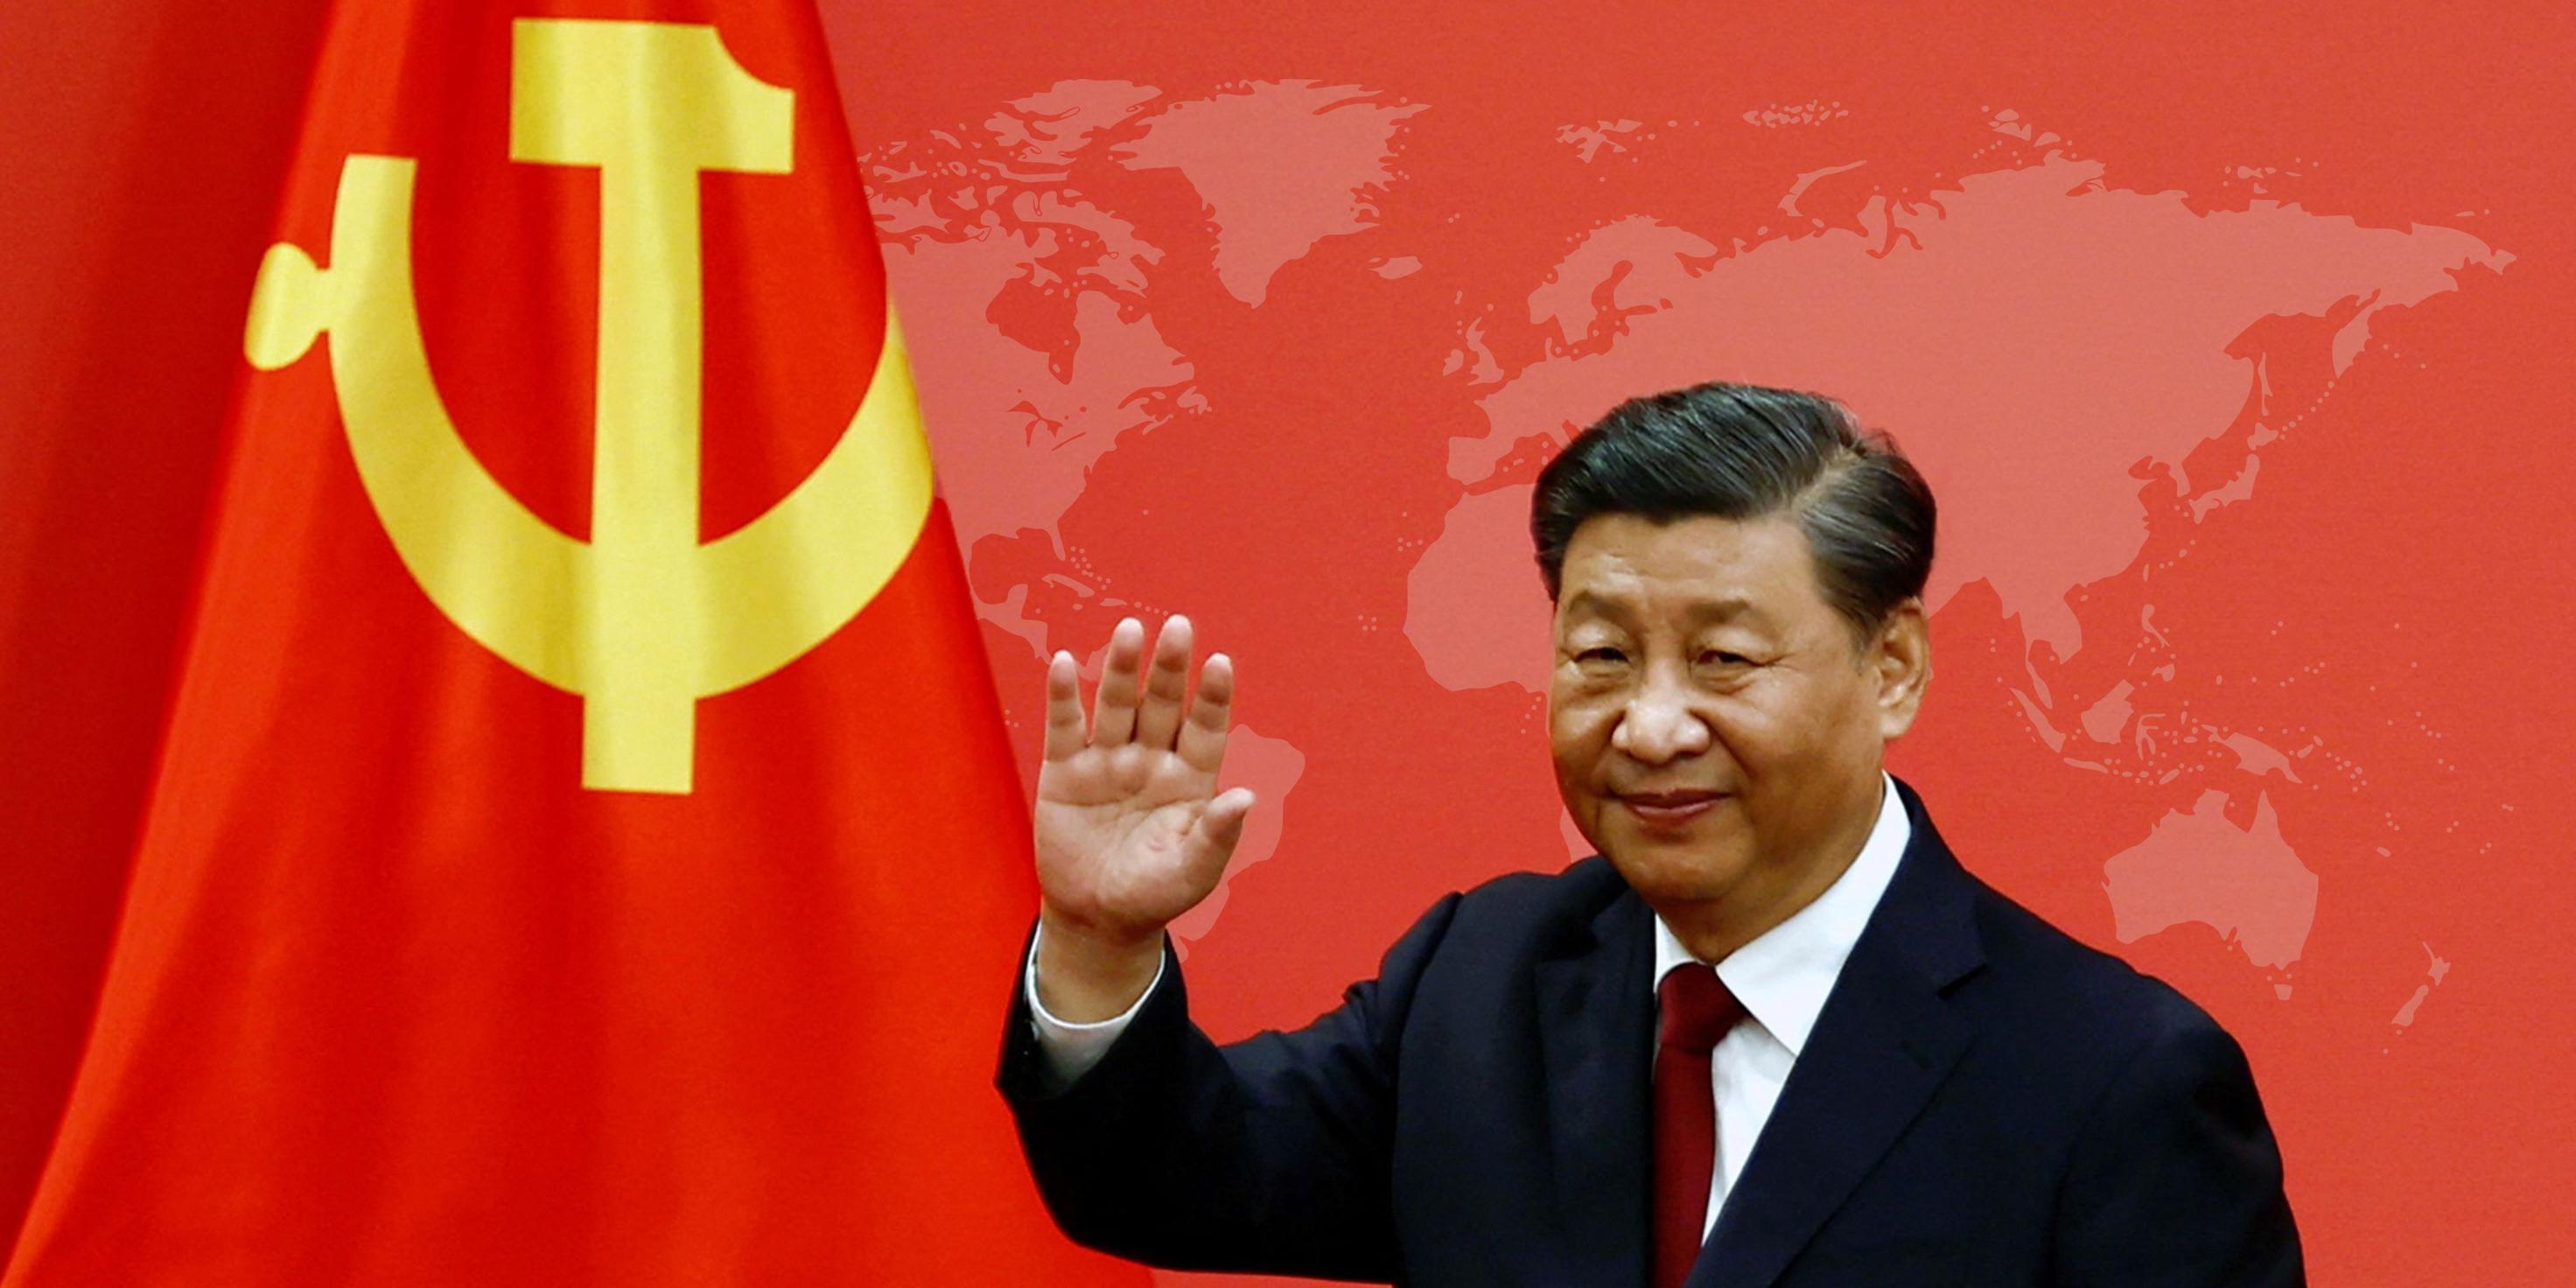 كيف تفكر قيادة الصين في الأزمات الإقليمية والدولية؟